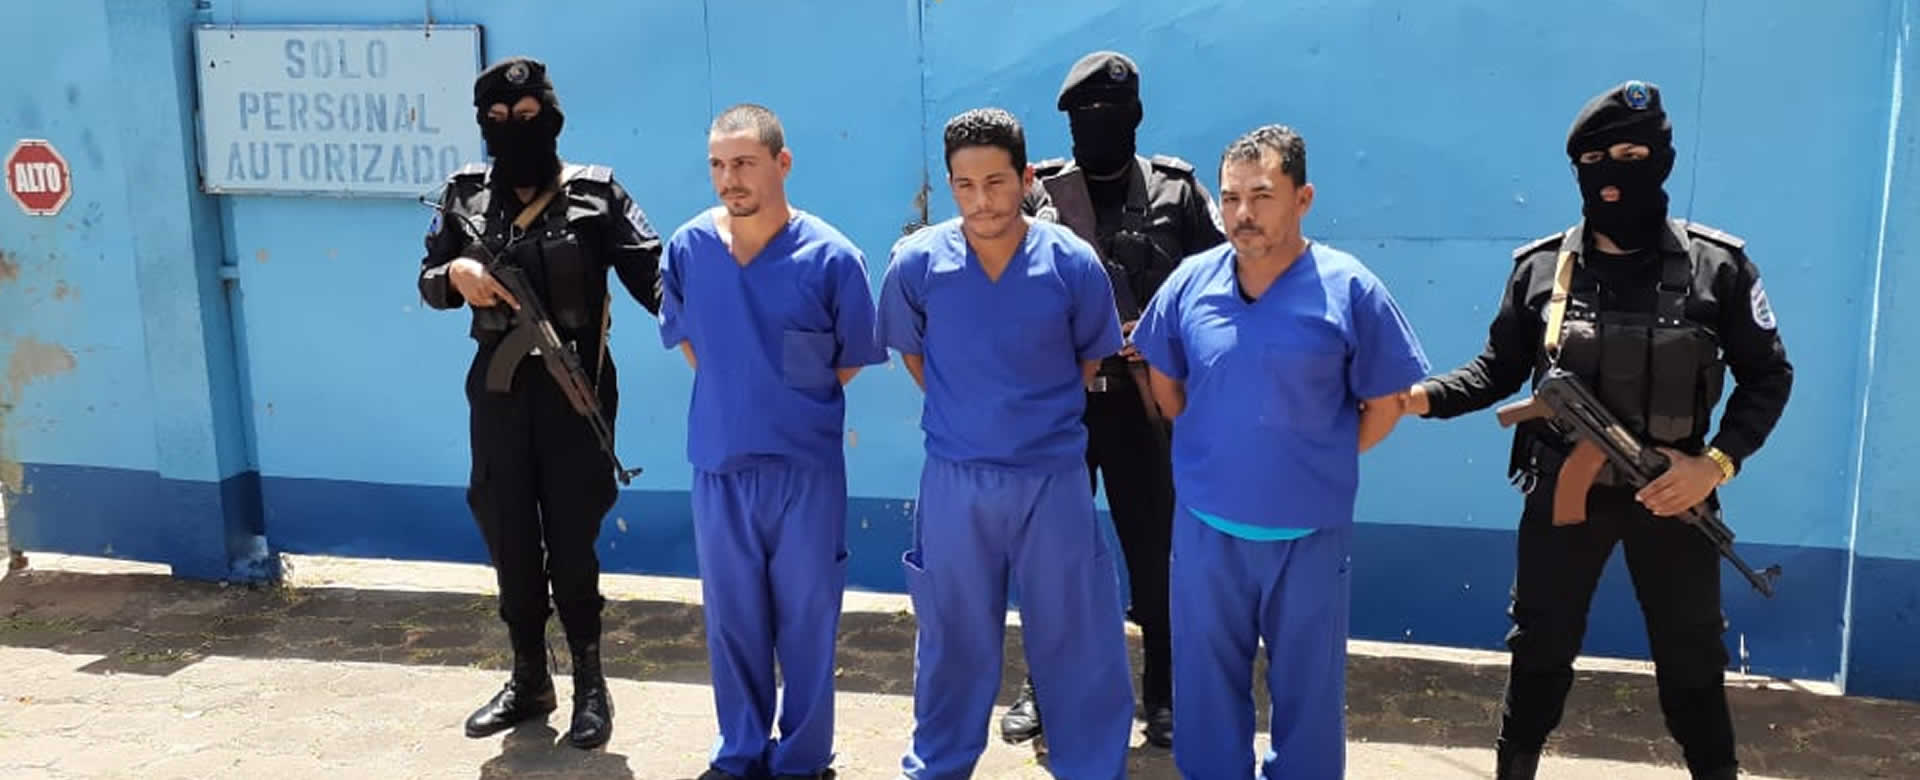 Policía Nacional desarticula banda delincuencial en Juigalpa, Chontales